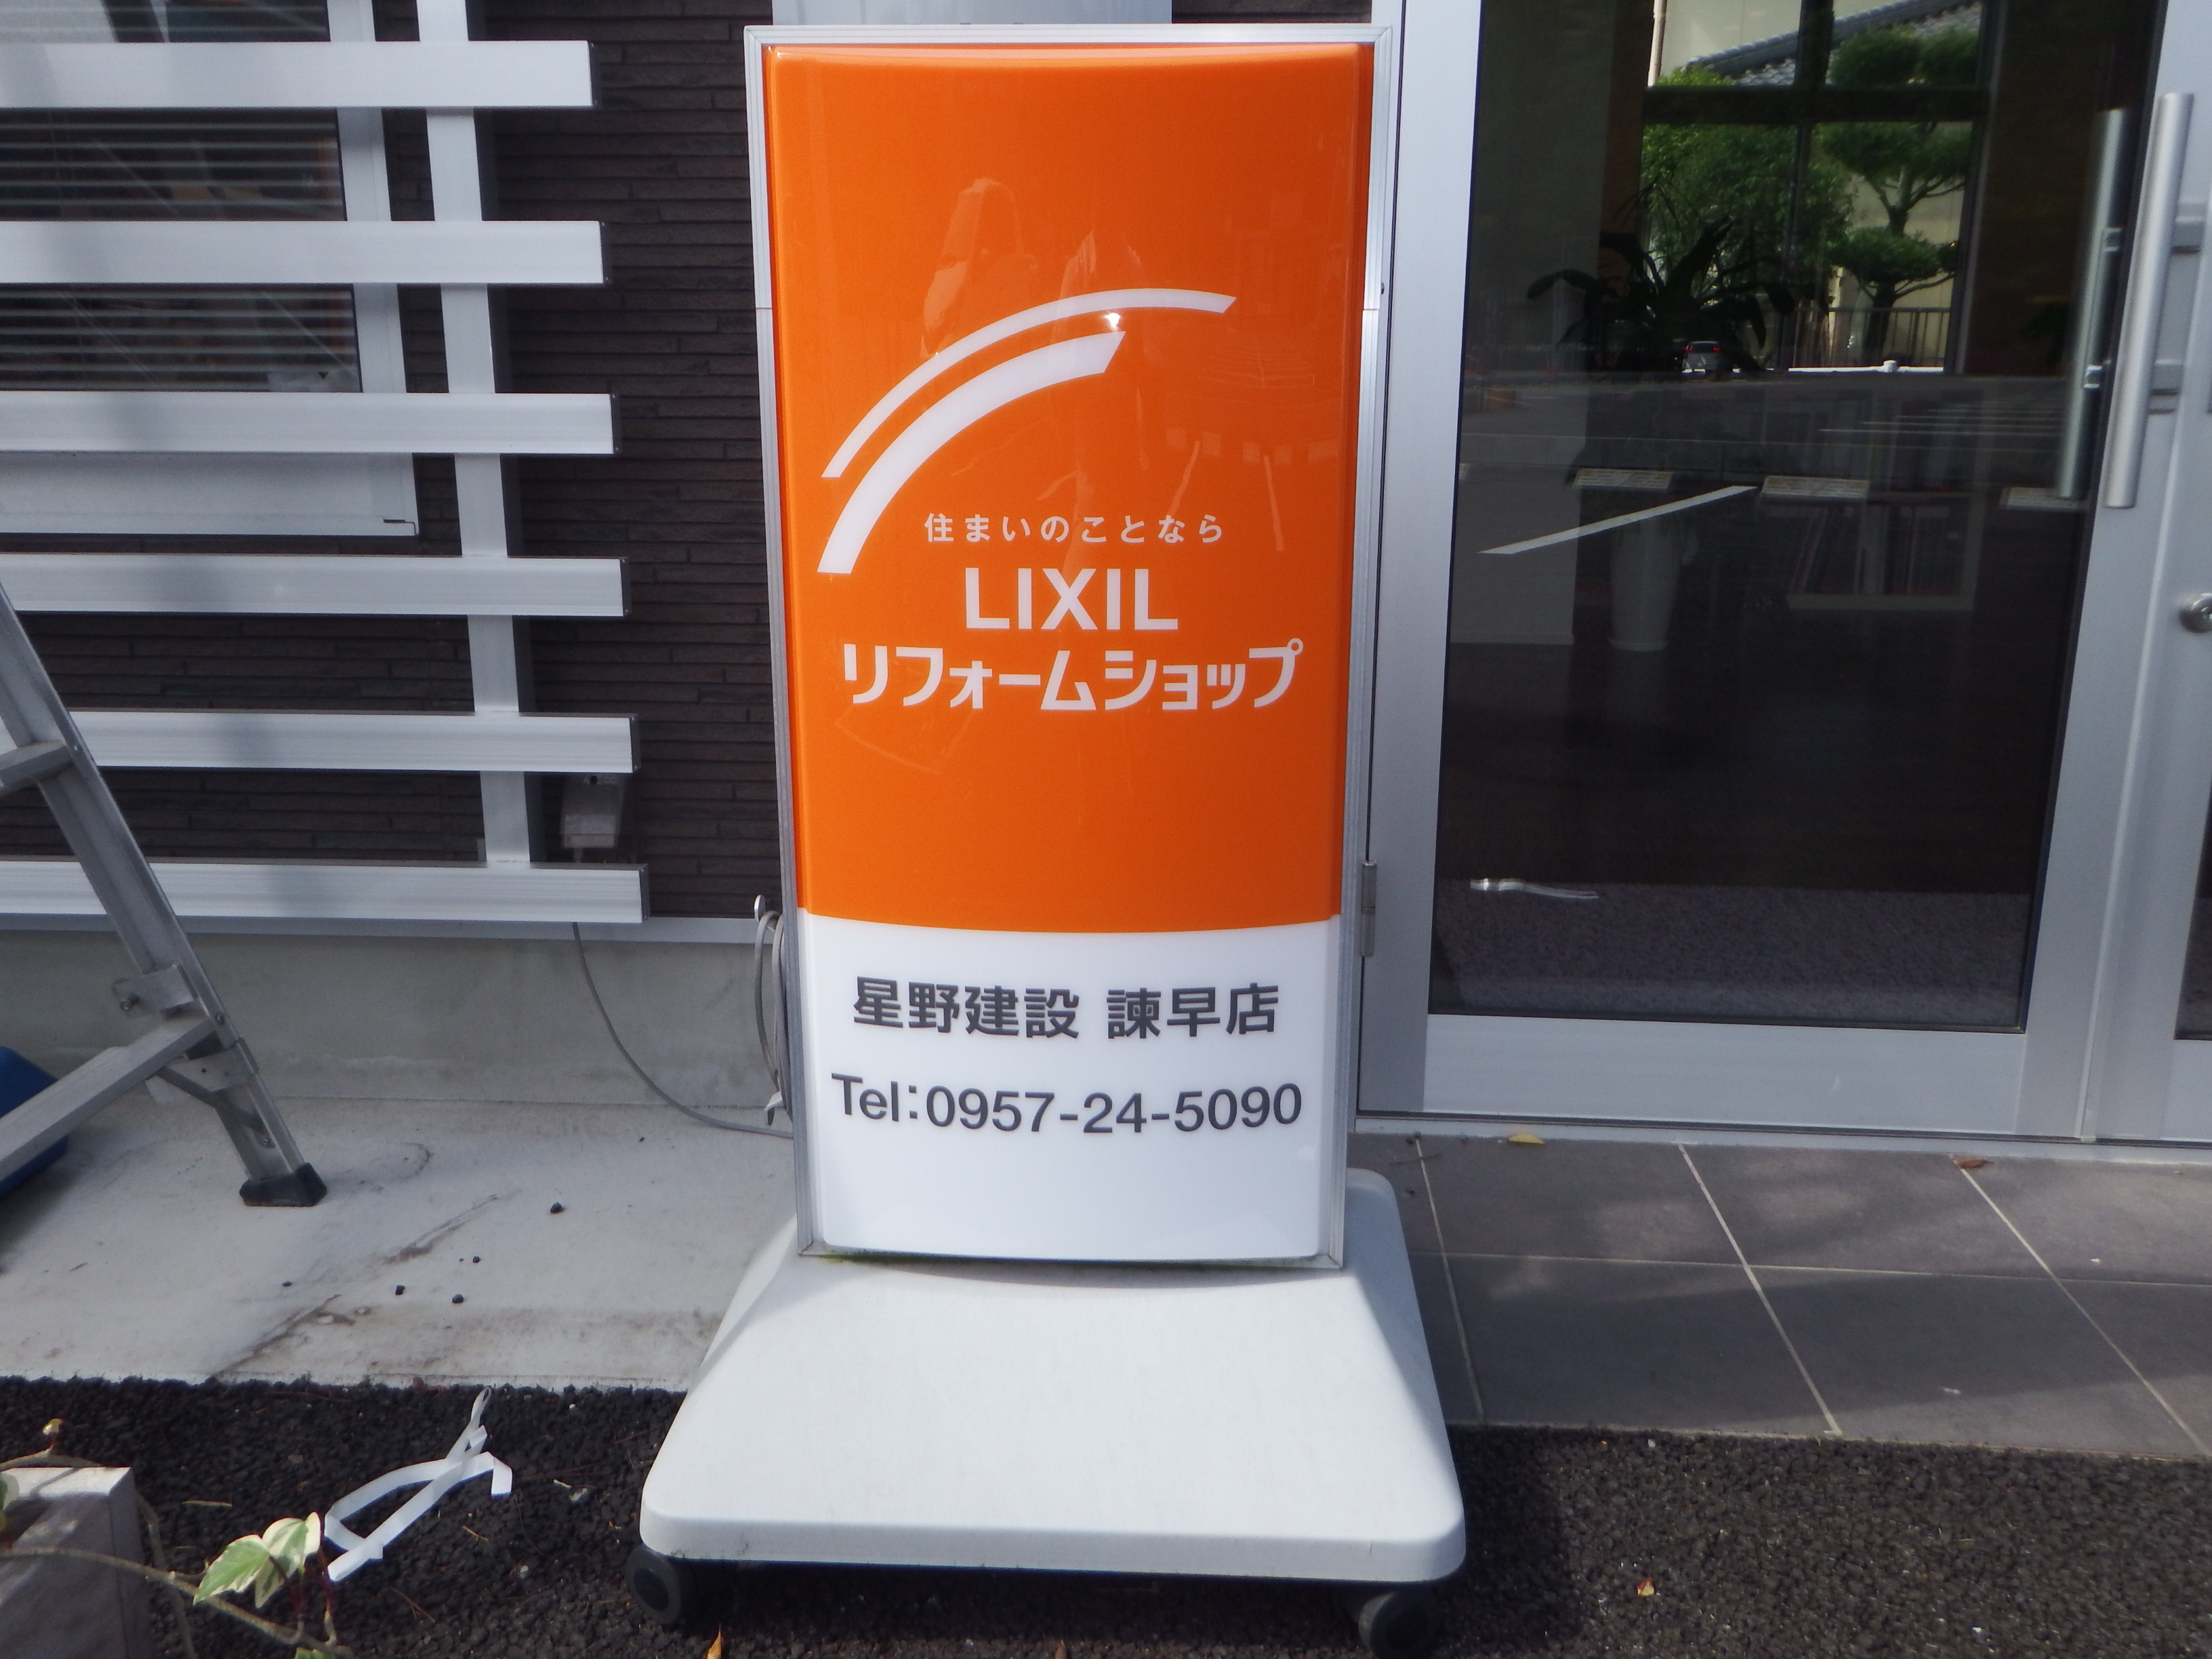 https://www.lixil-reformshop.jp/shop/SC00421005/DSCF8492.JPG